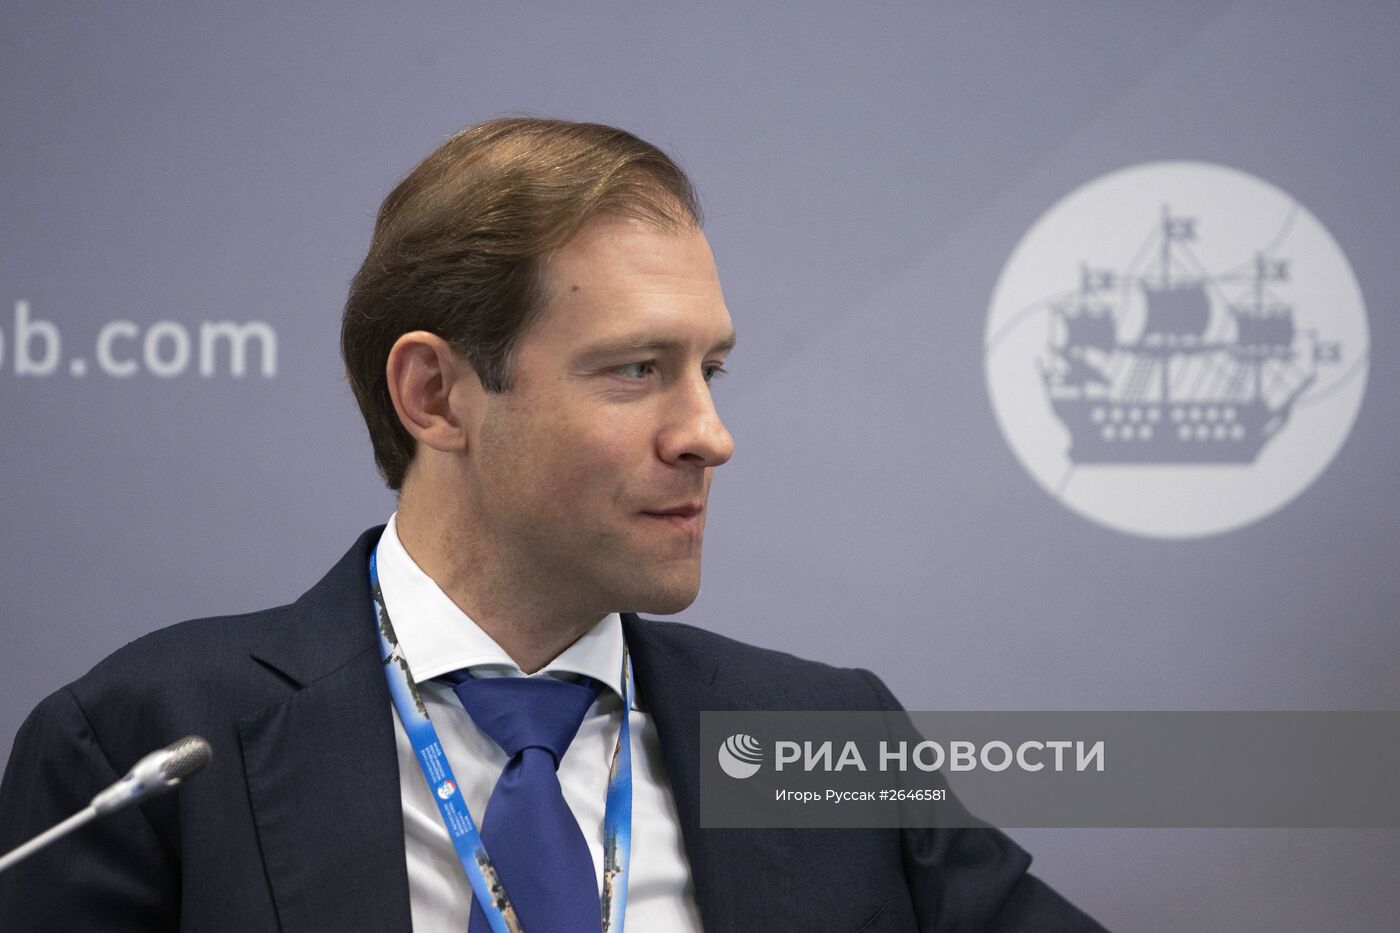 Панельная сессия "Промышленная политика России: как расставить приоритеты?" в рамках ПМЭФ 2015